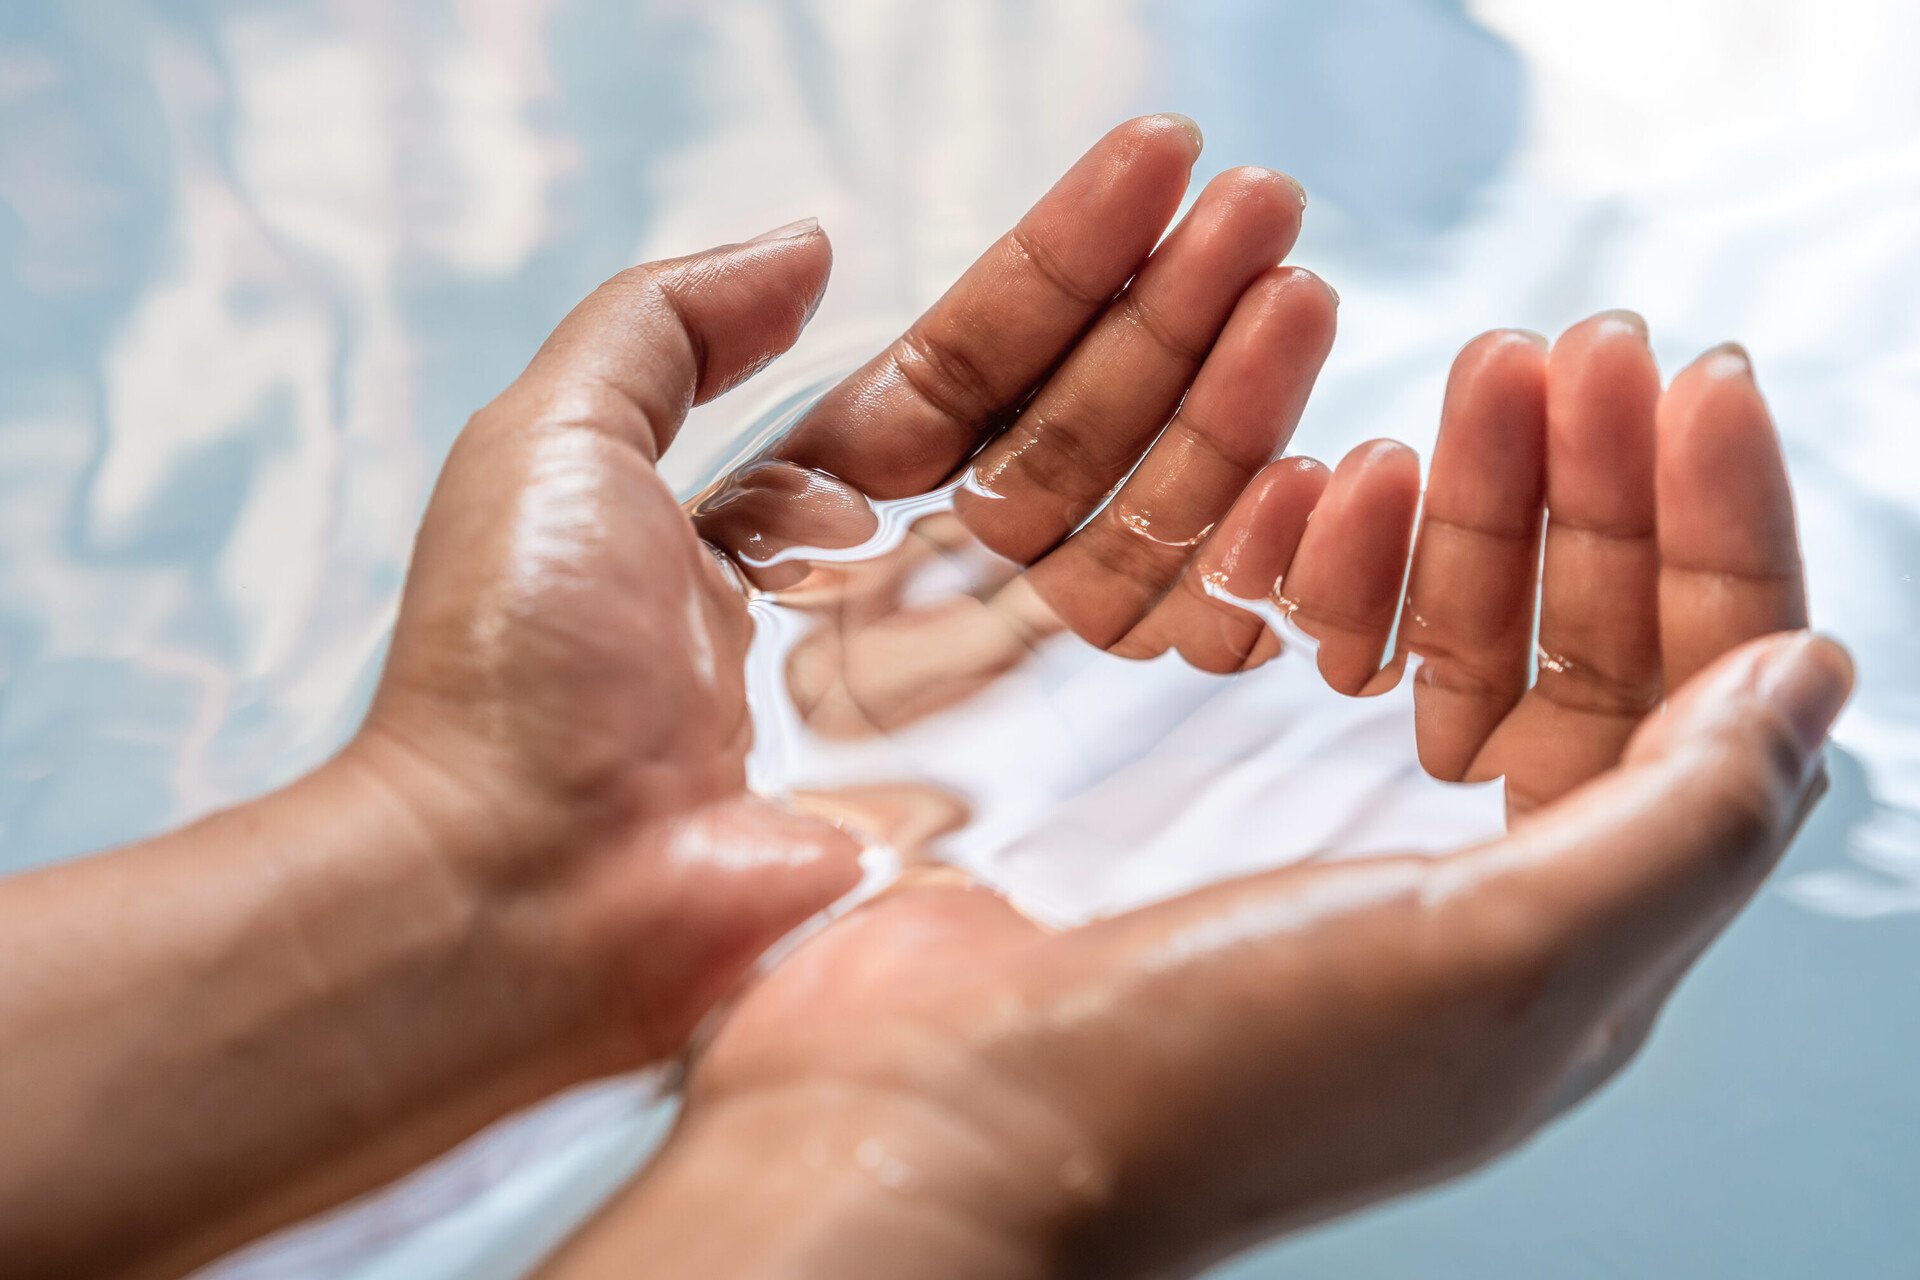 Zwei Hände schöpfen Wasser. Das Bild steht für das Handbad – einen wichtigen Bestandteil der Nagelpflege.